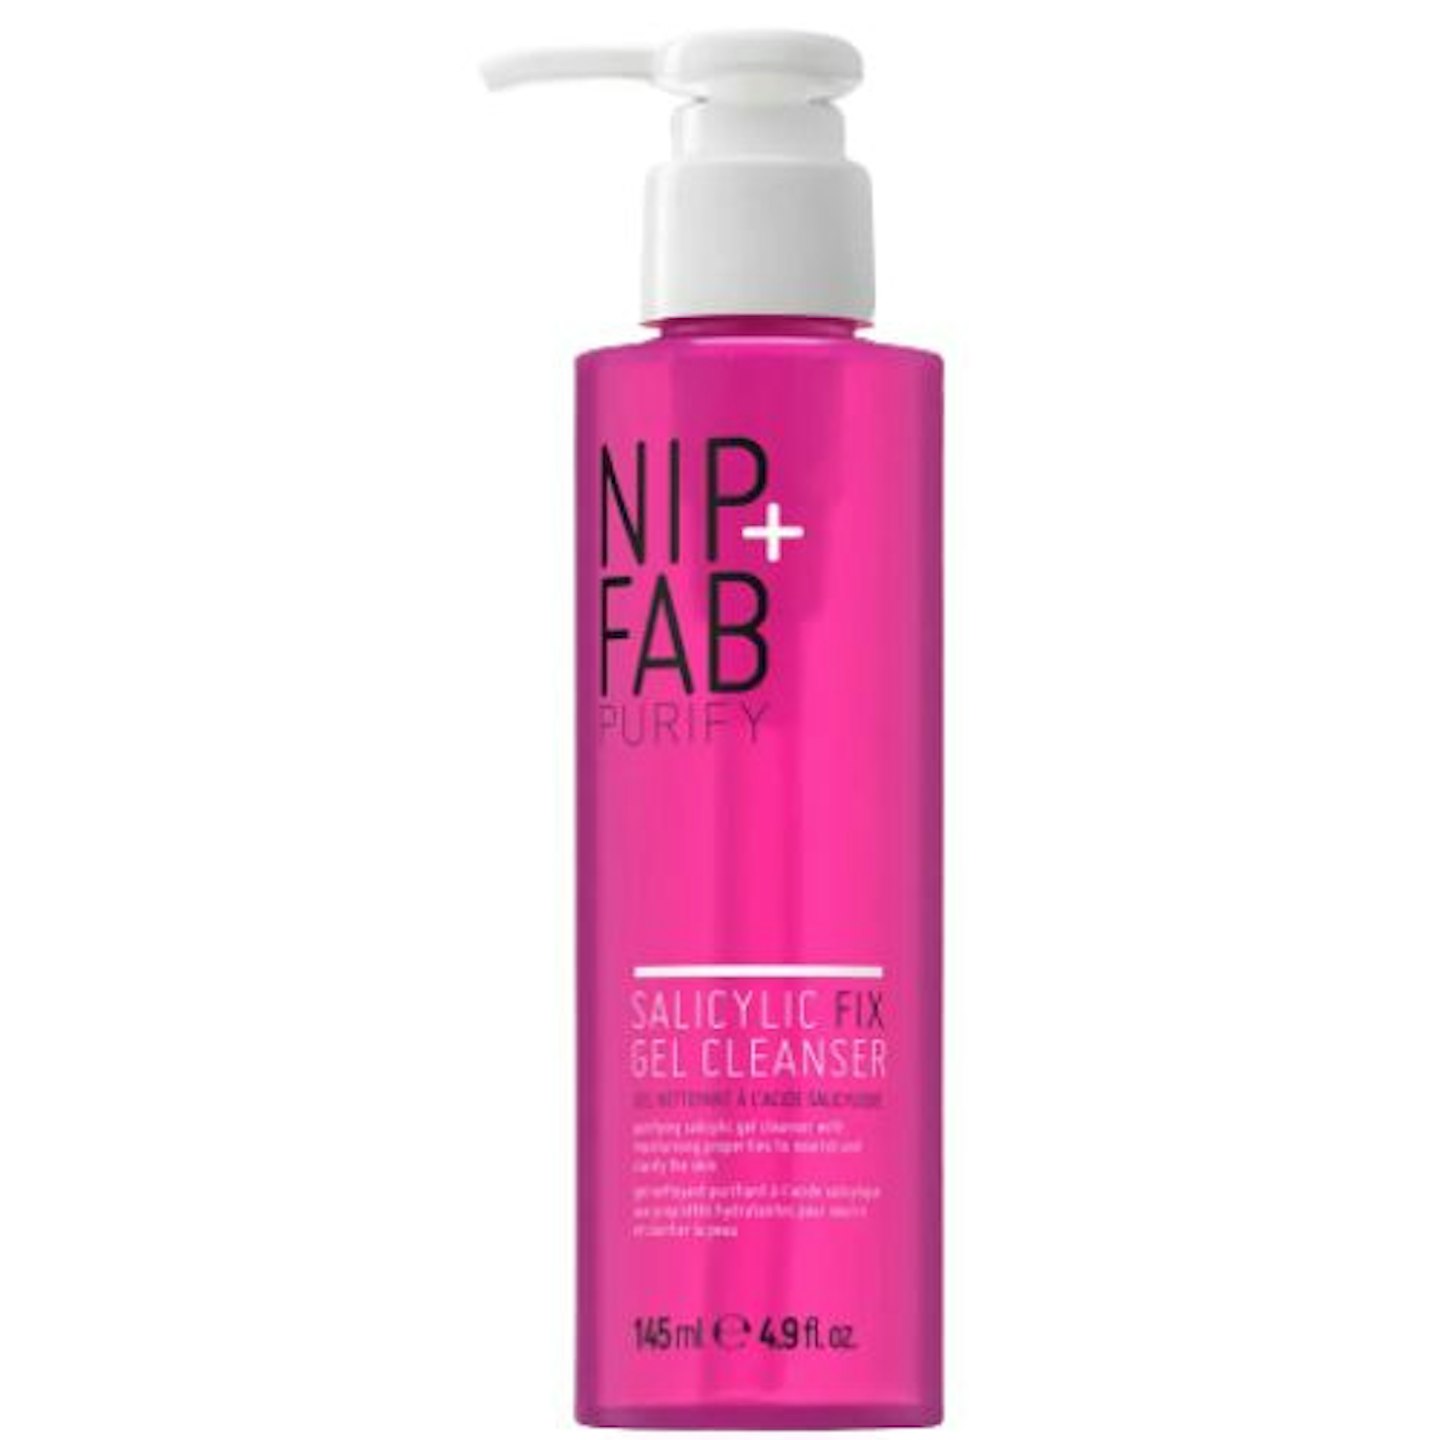 NIP+FAB Salicylic Fix Gel Cleanser